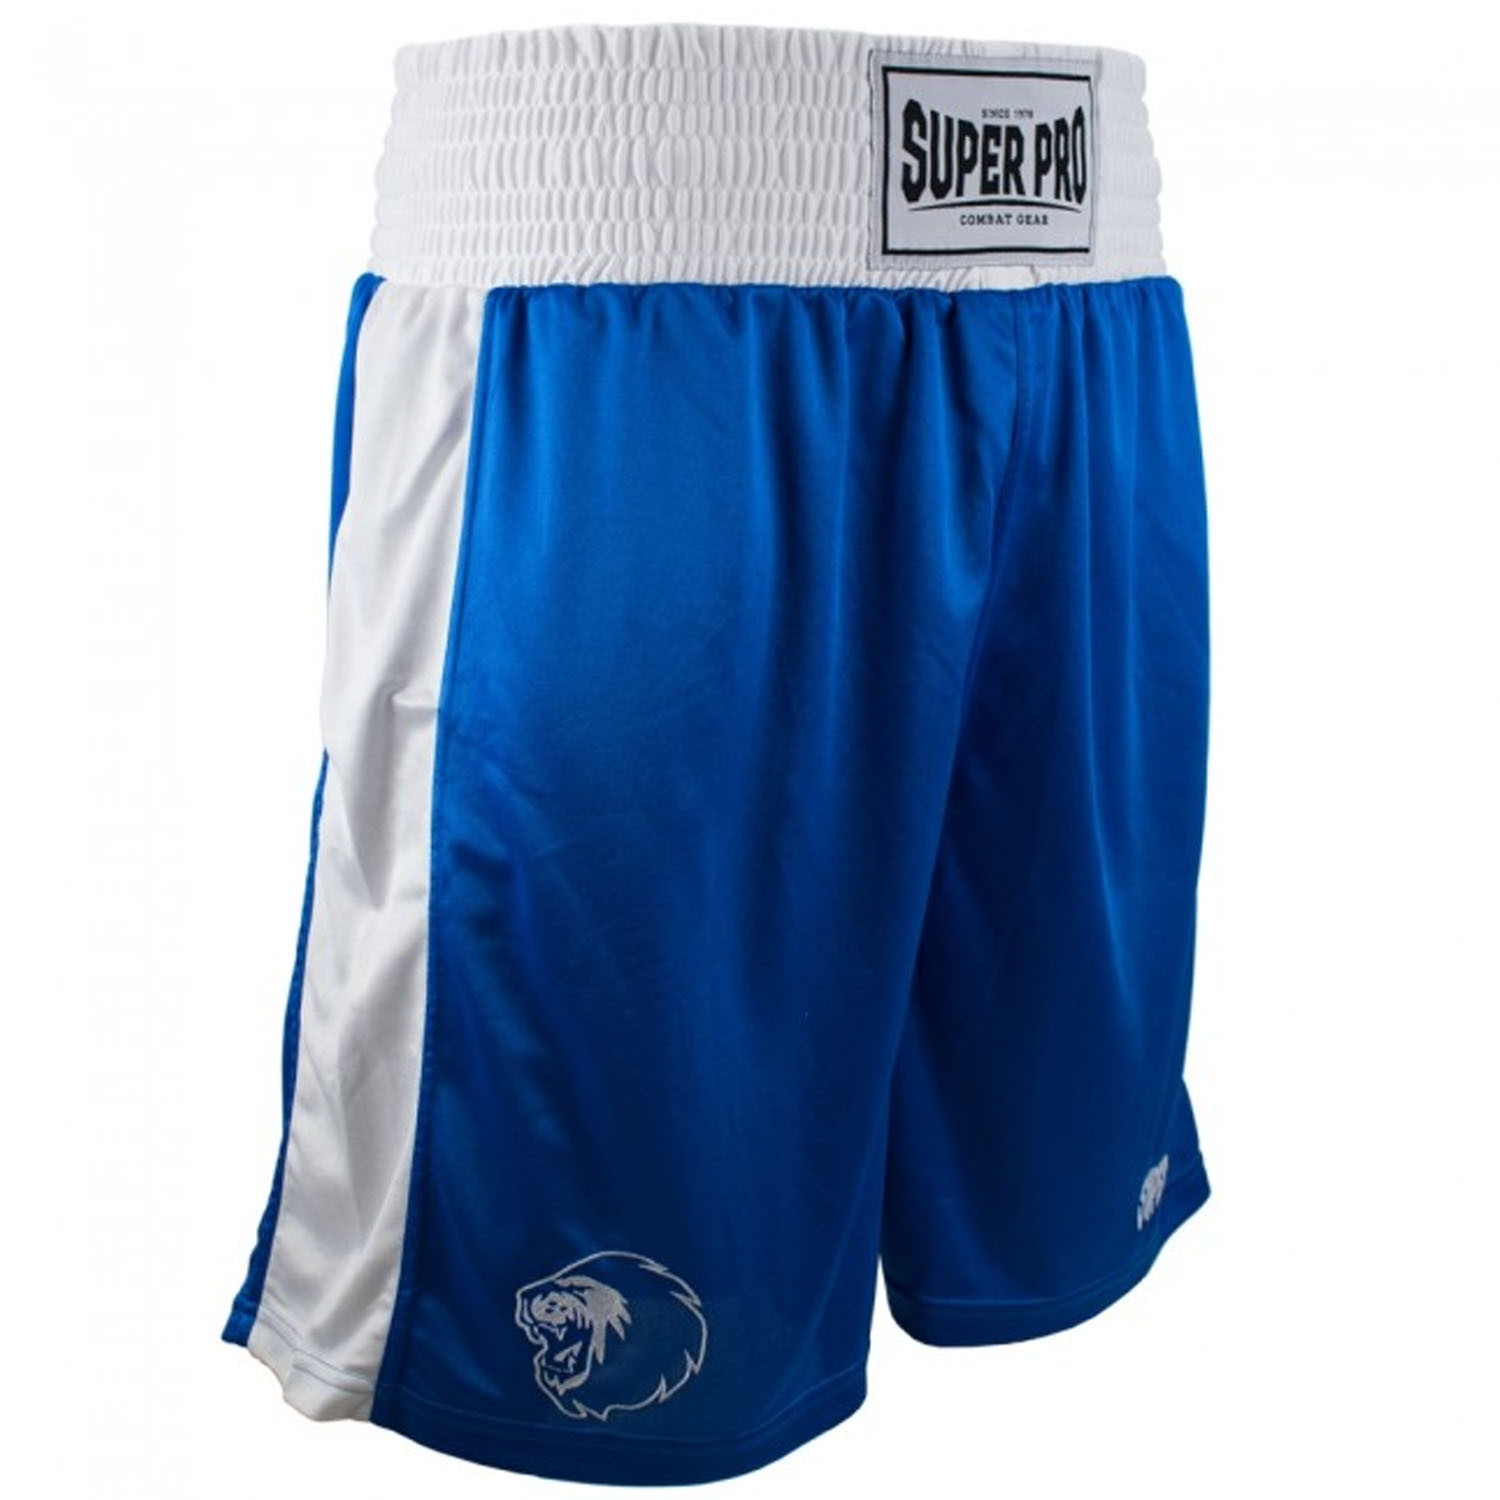 Super Pro Boxhose, Club, blau- weiß, S